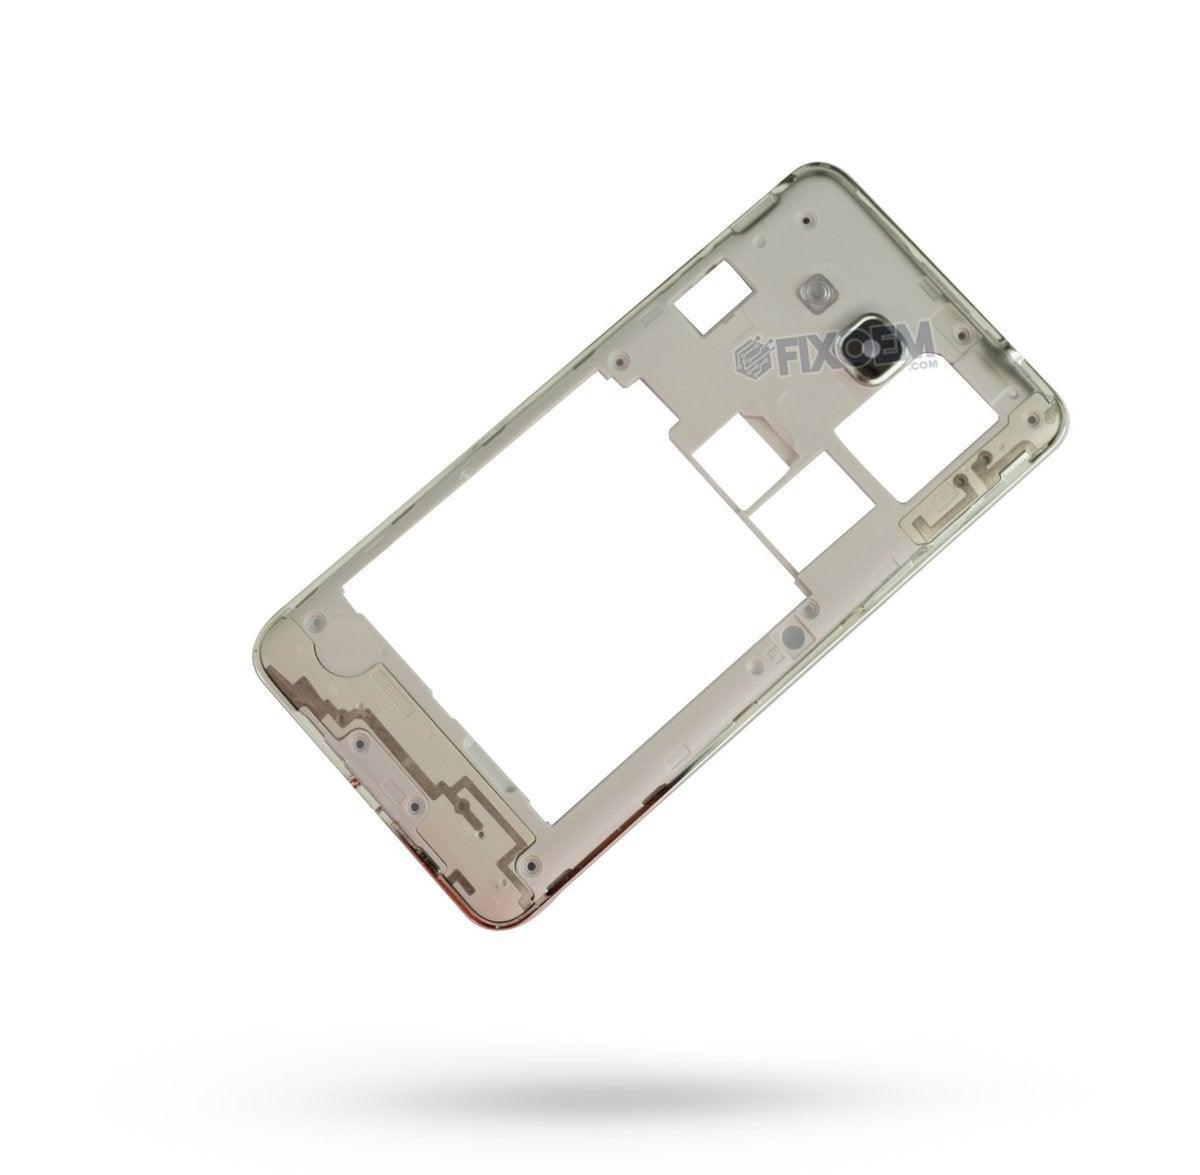 Marco Samsung Grand Prime G530 a solo $ 70.00 Refaccion y puestos celulares, refurbish y microelectronica.- FixOEM